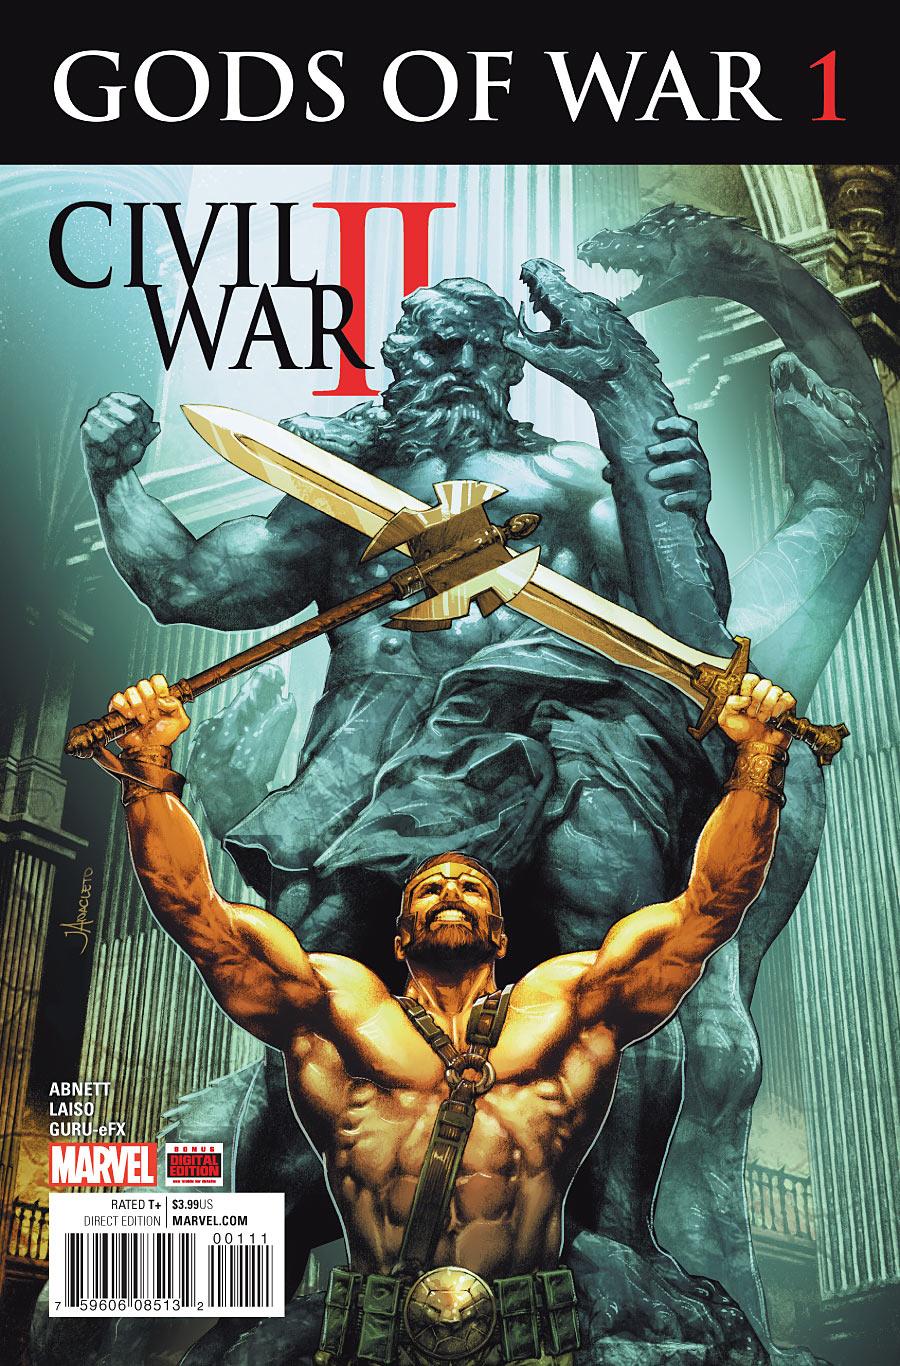 Civil War II: Gods of War Vol. 1 #1